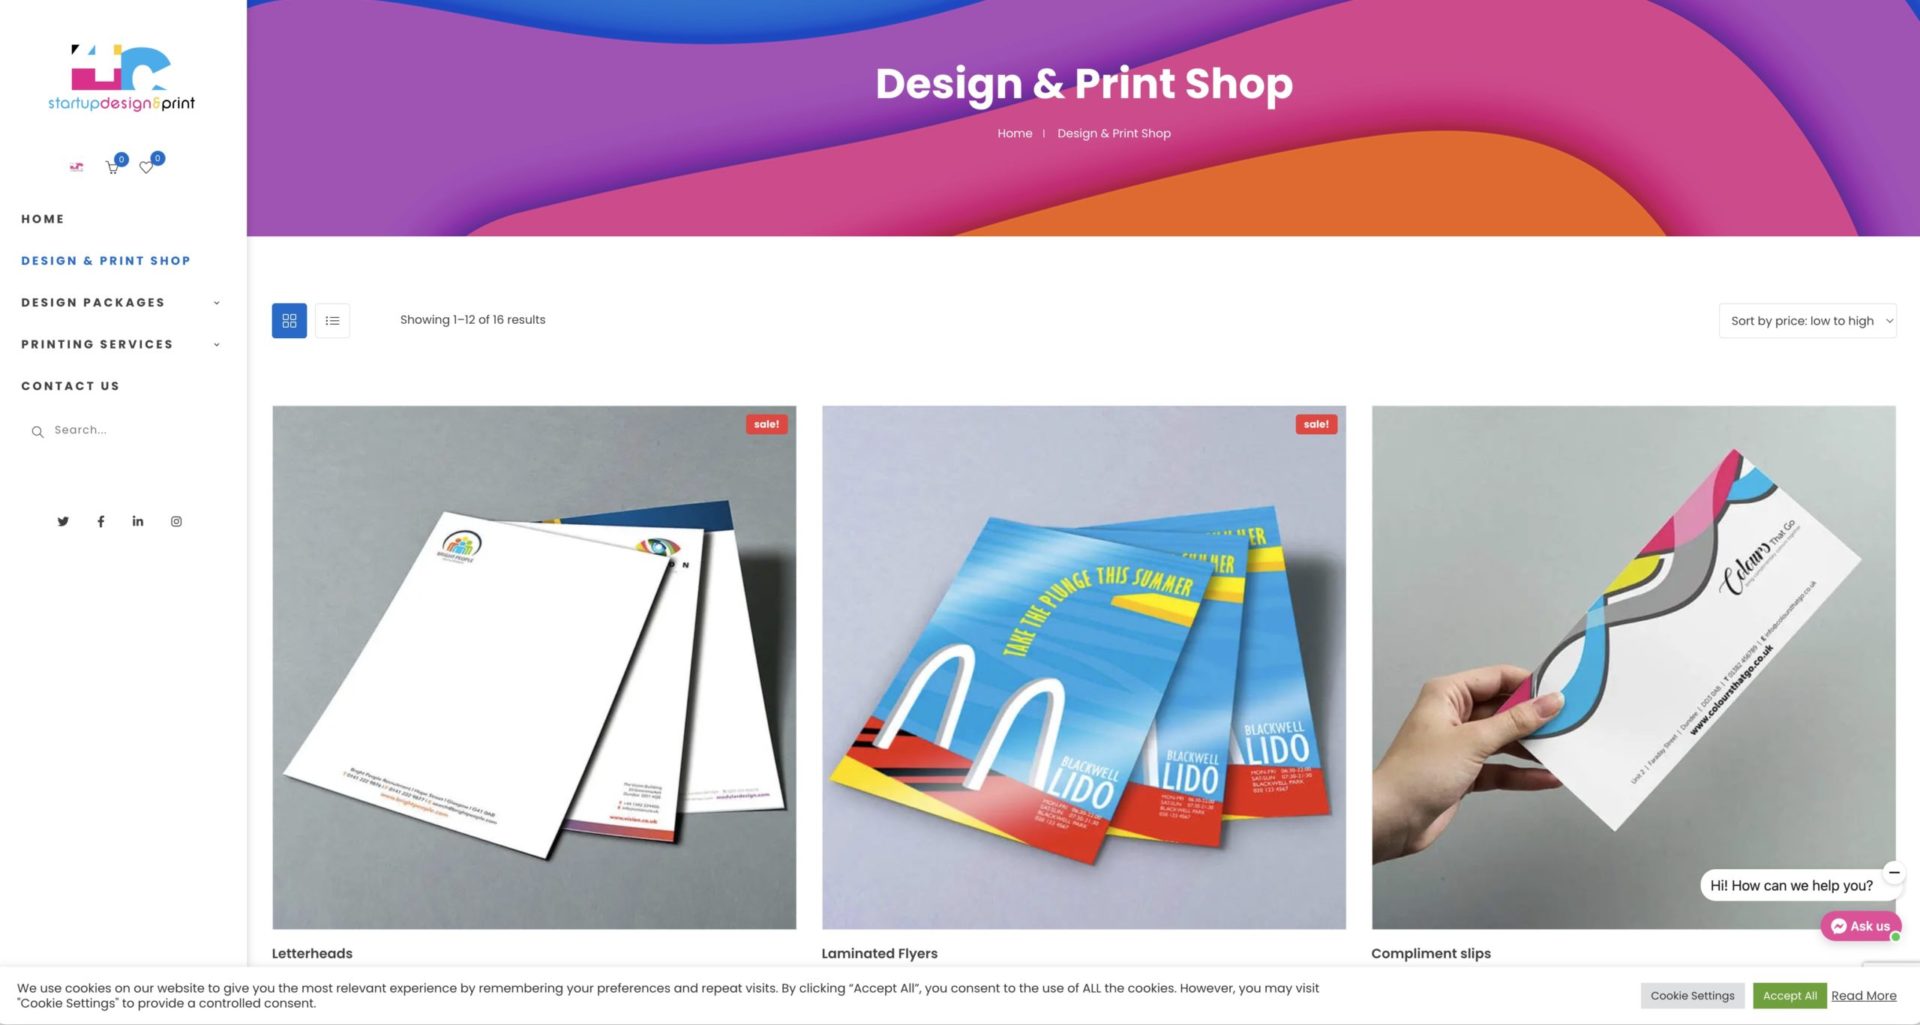 4ccreatives-design-print-shop-doncaster-uk-copy-scaled